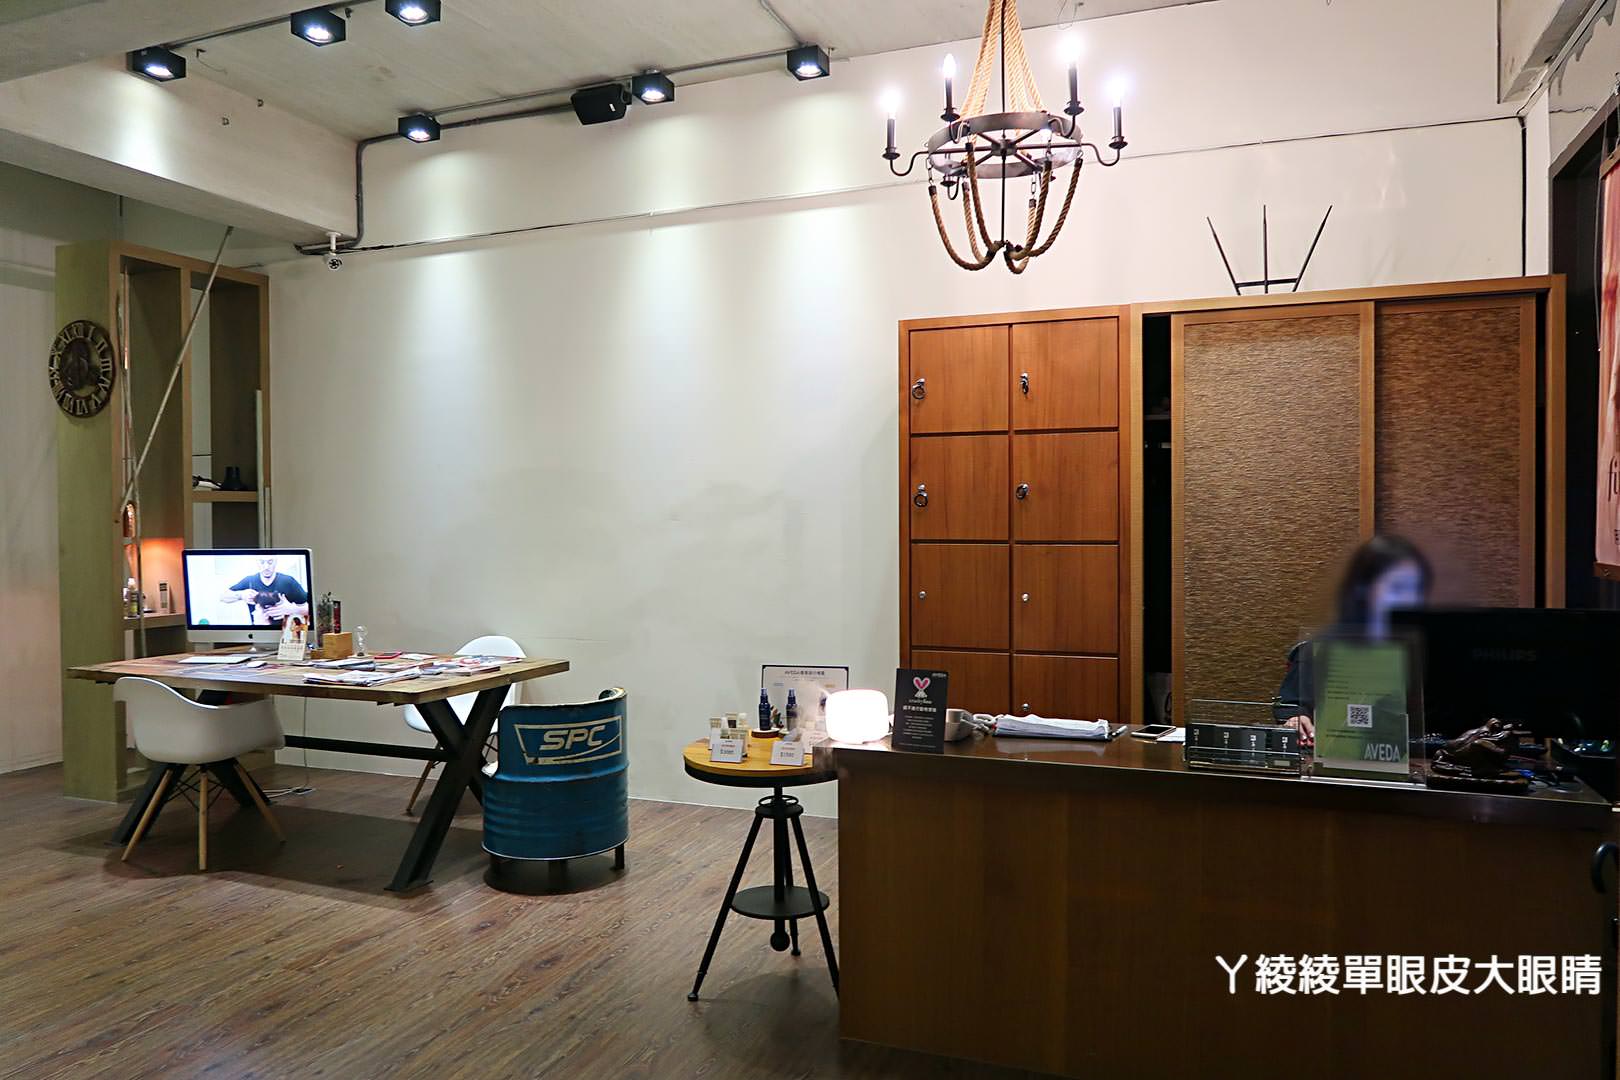 新竹竹北燙護髮｜帶有工業風咖啡館的精萃髮廊，使用AVEDA肯夢髮品